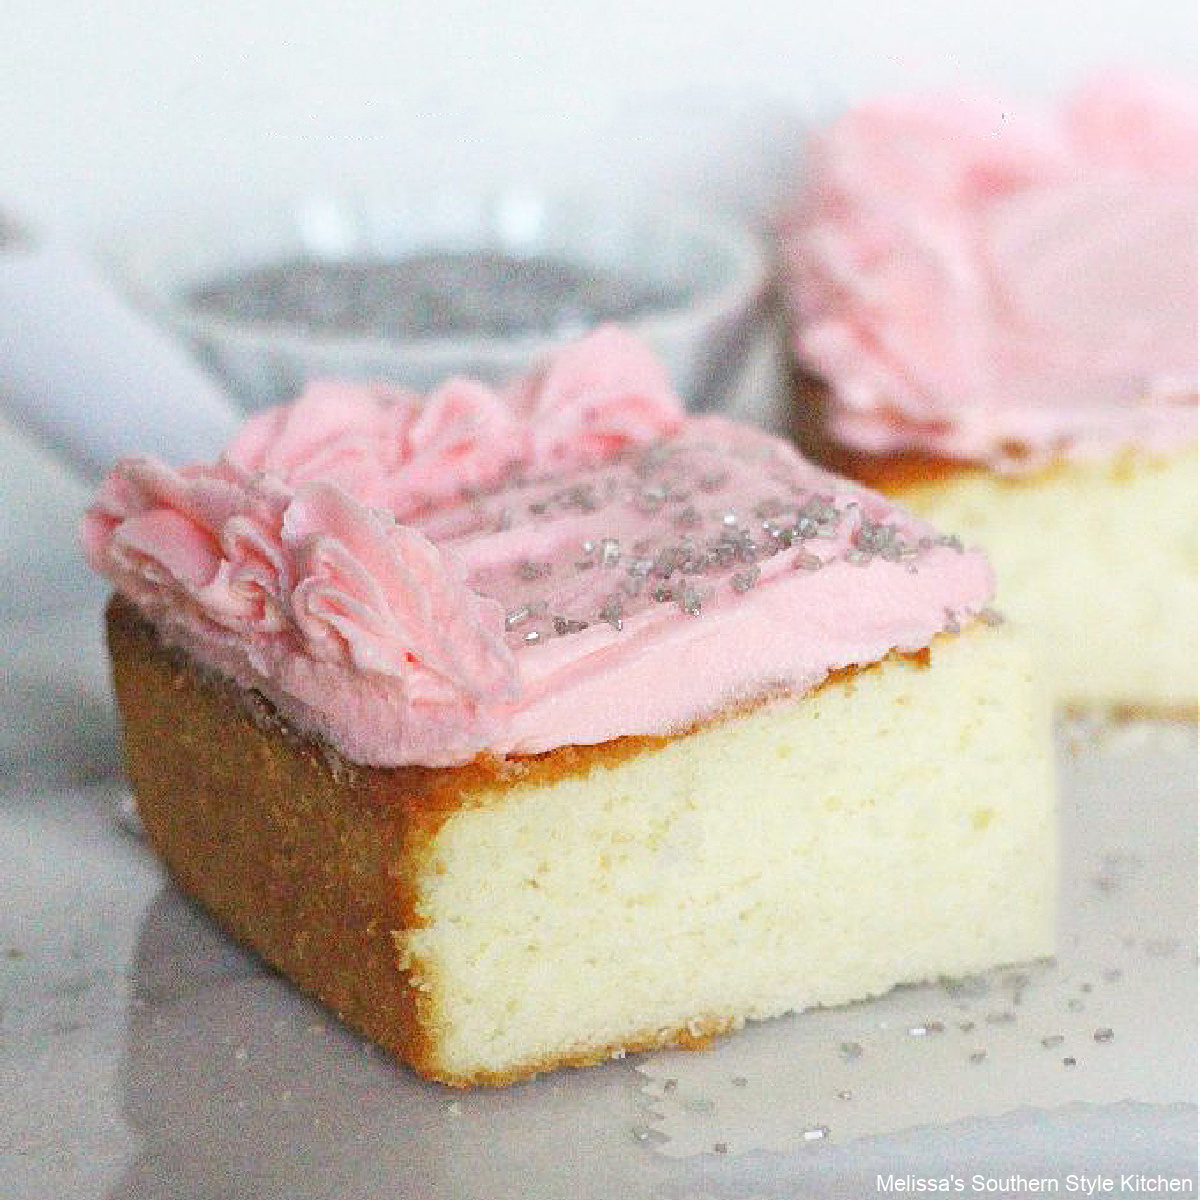 https://www.melissassouthernstylekitchen.com/wp-content/uploads/2013/05/best-white-buttermilk-cake-recipe.jpg